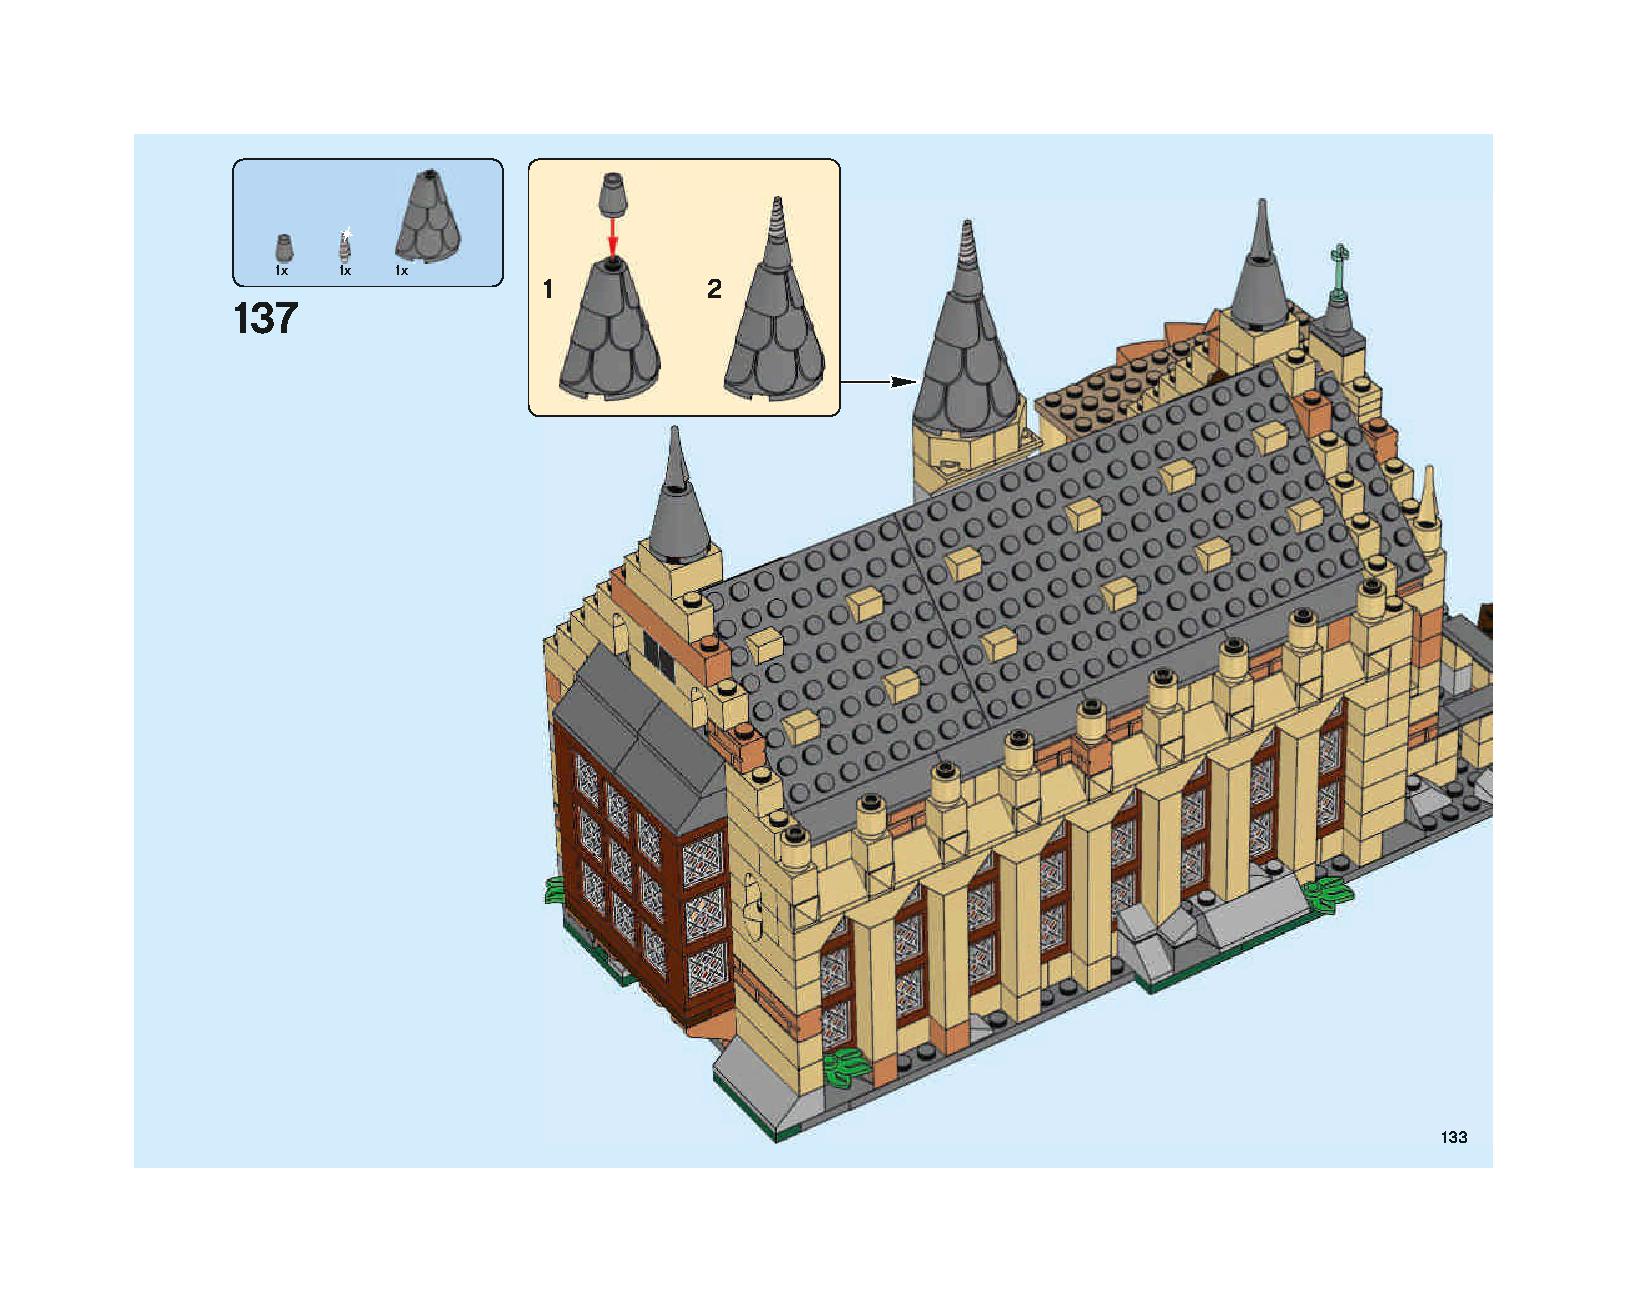 ホグワーツの大広間 75954 レゴの商品情報 レゴの説明書・組立方法 133 page